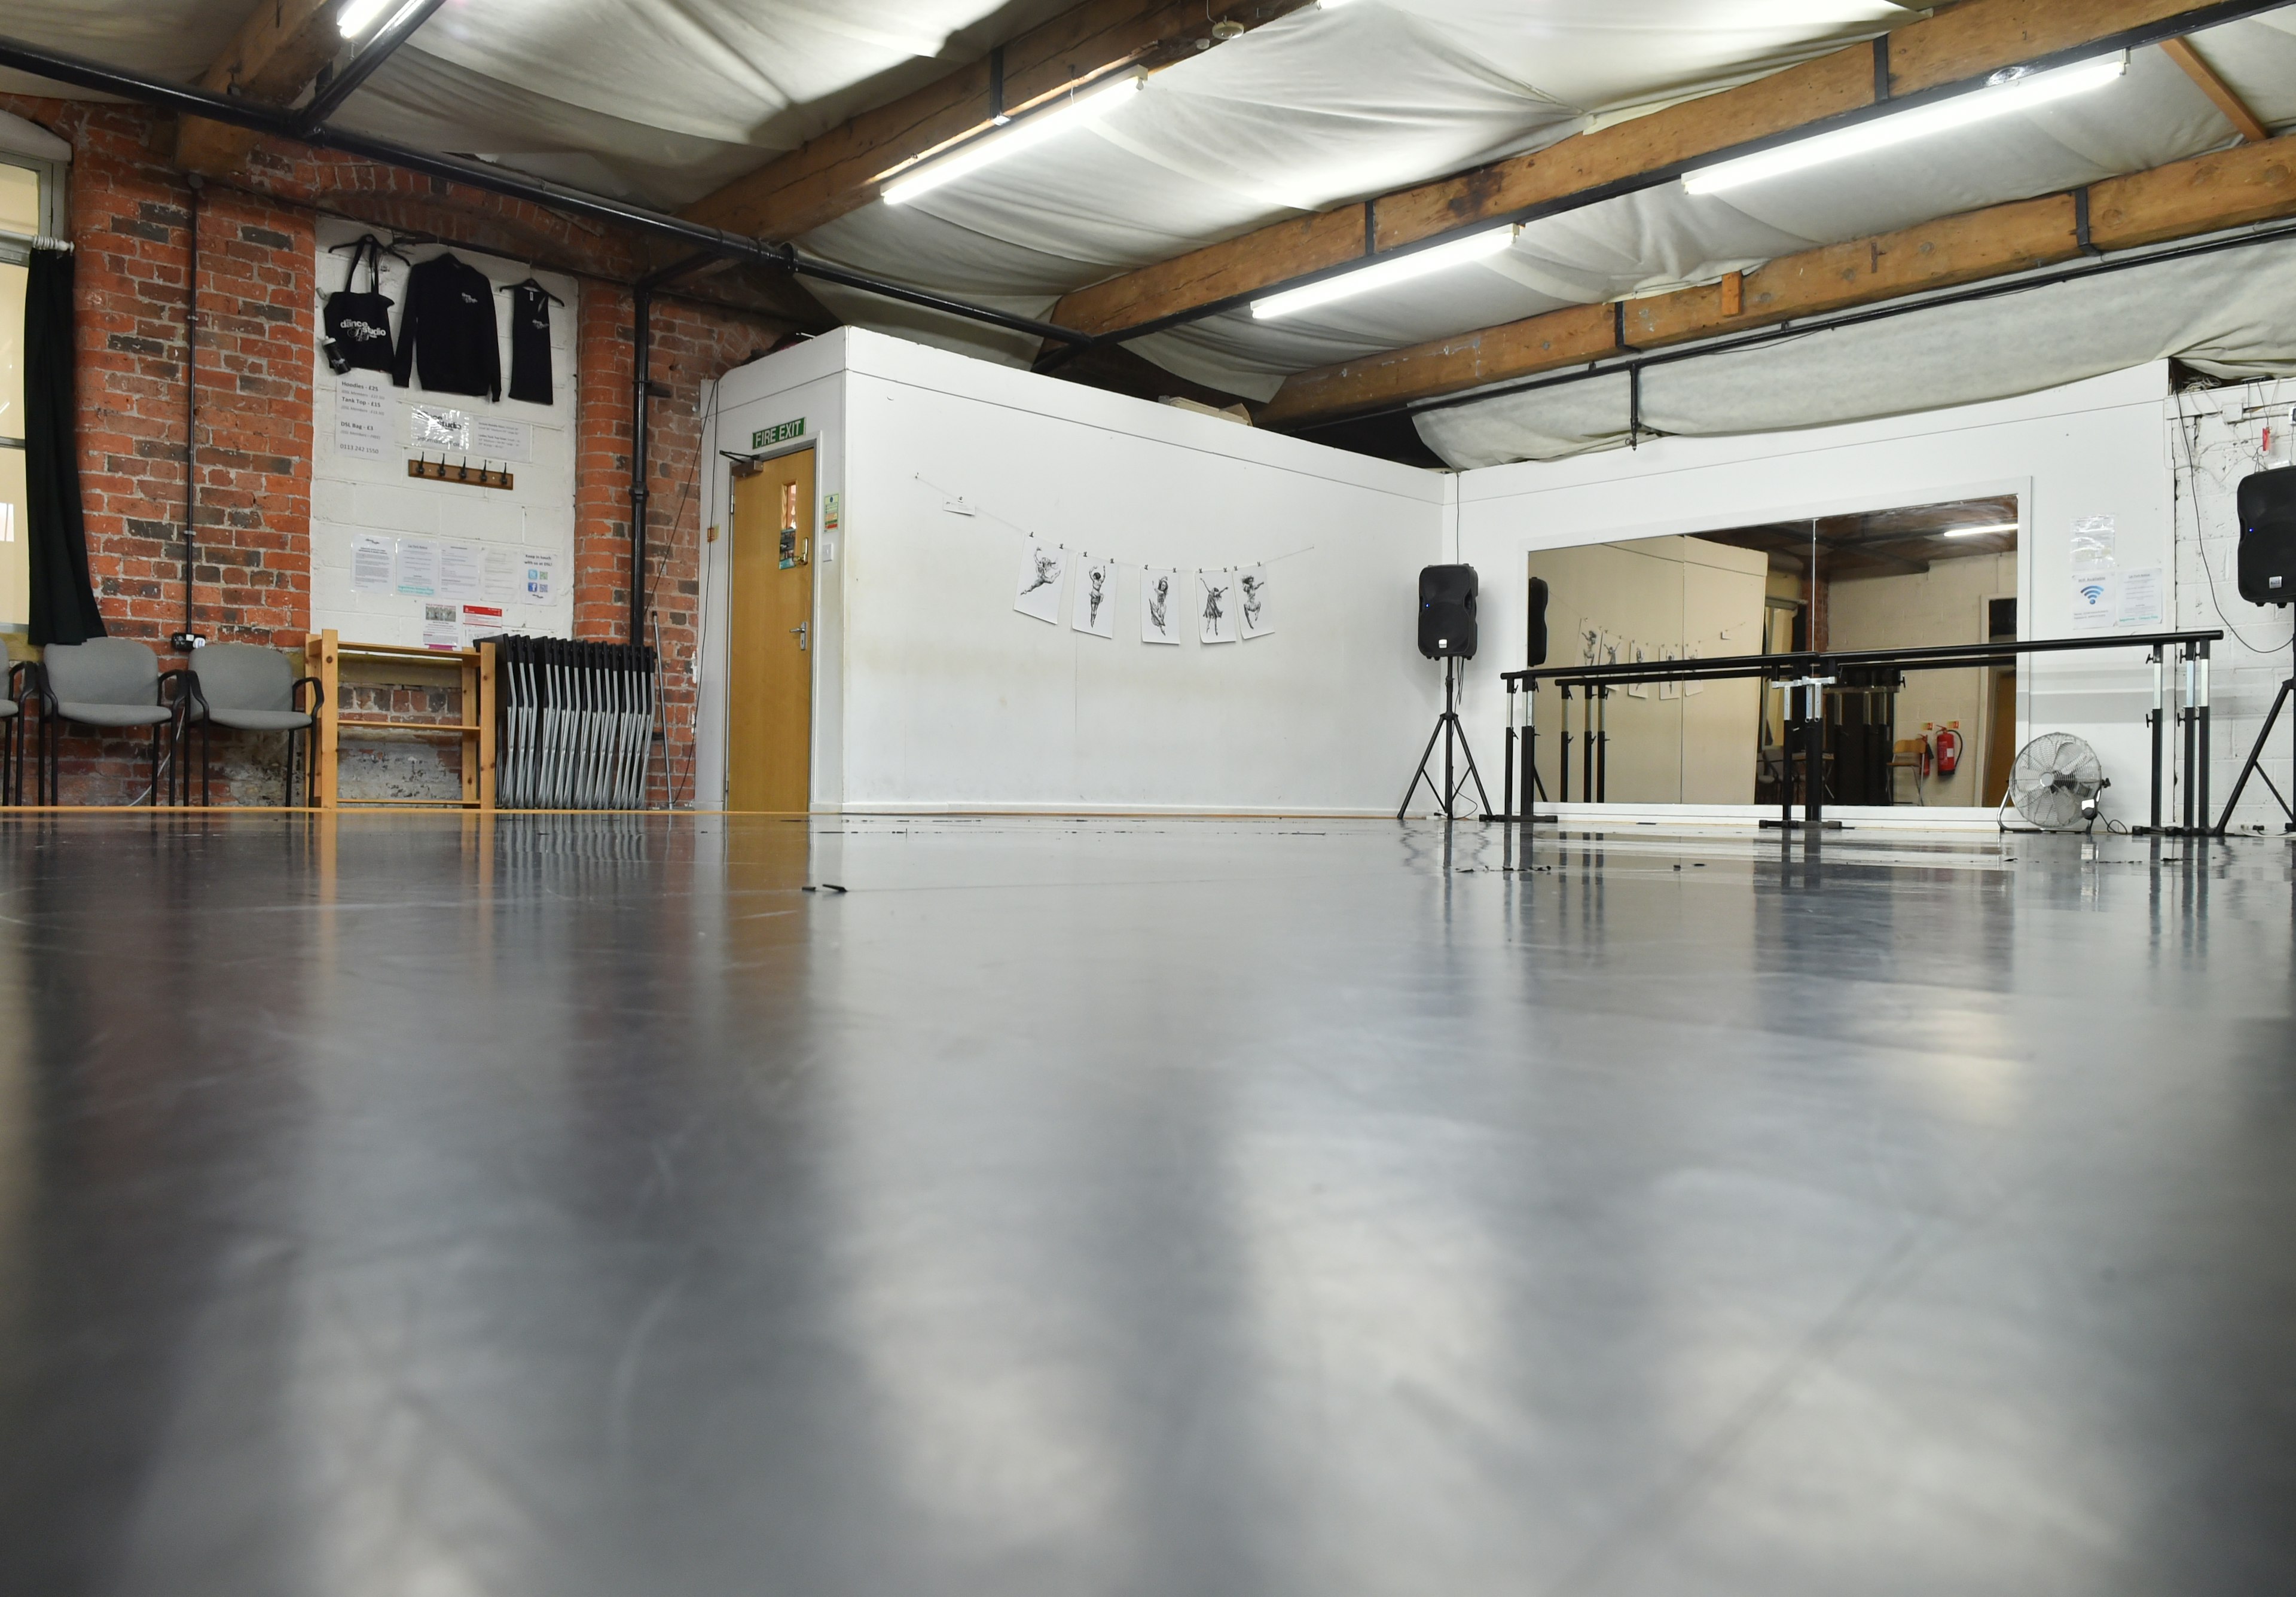 Business - The Dance Studio Leeds